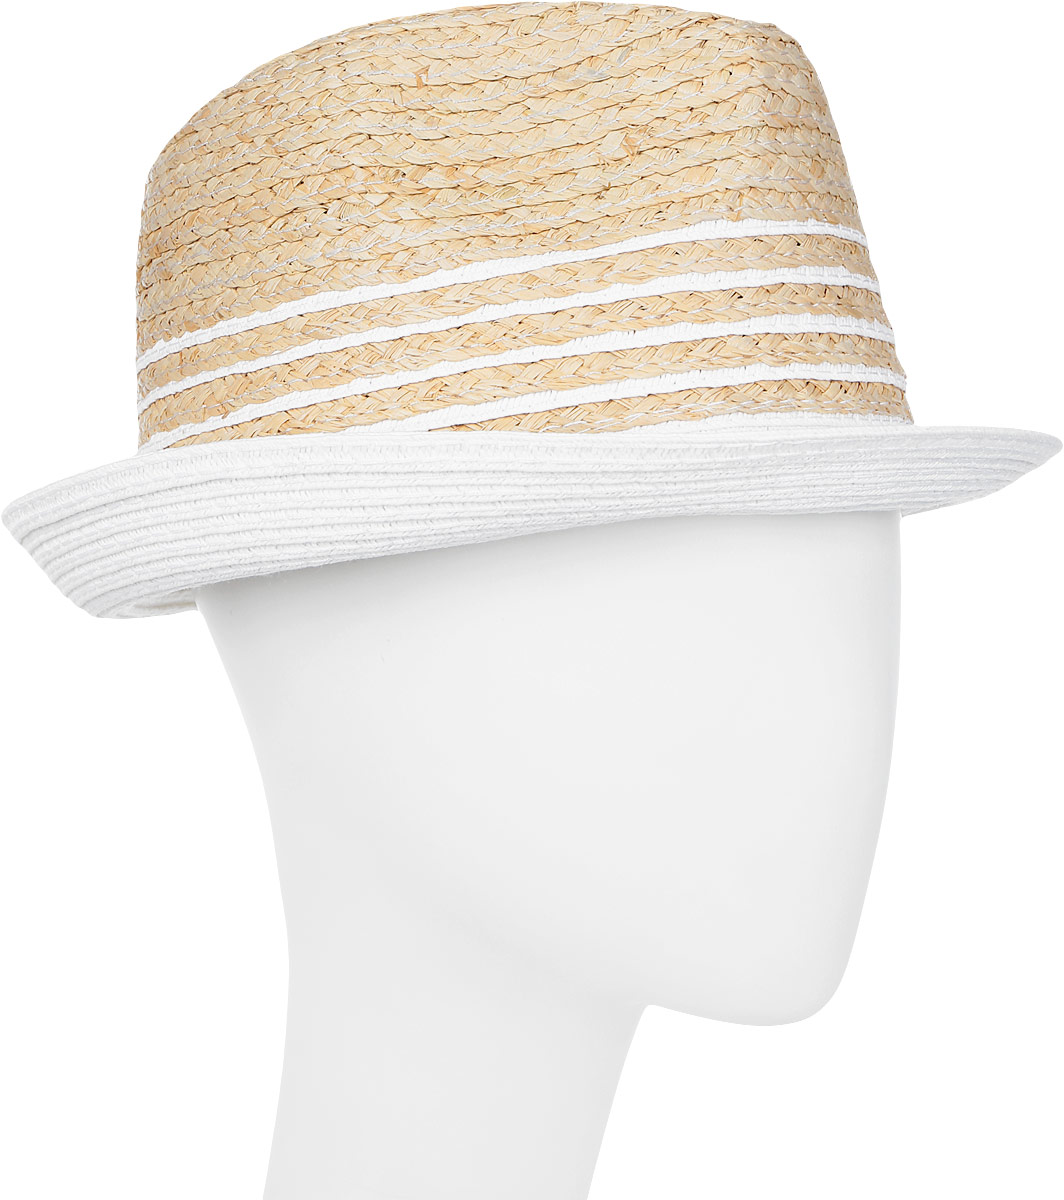 Шляпа женская Canoe Neel, цвет: белый. 1963540. Размер 56/59